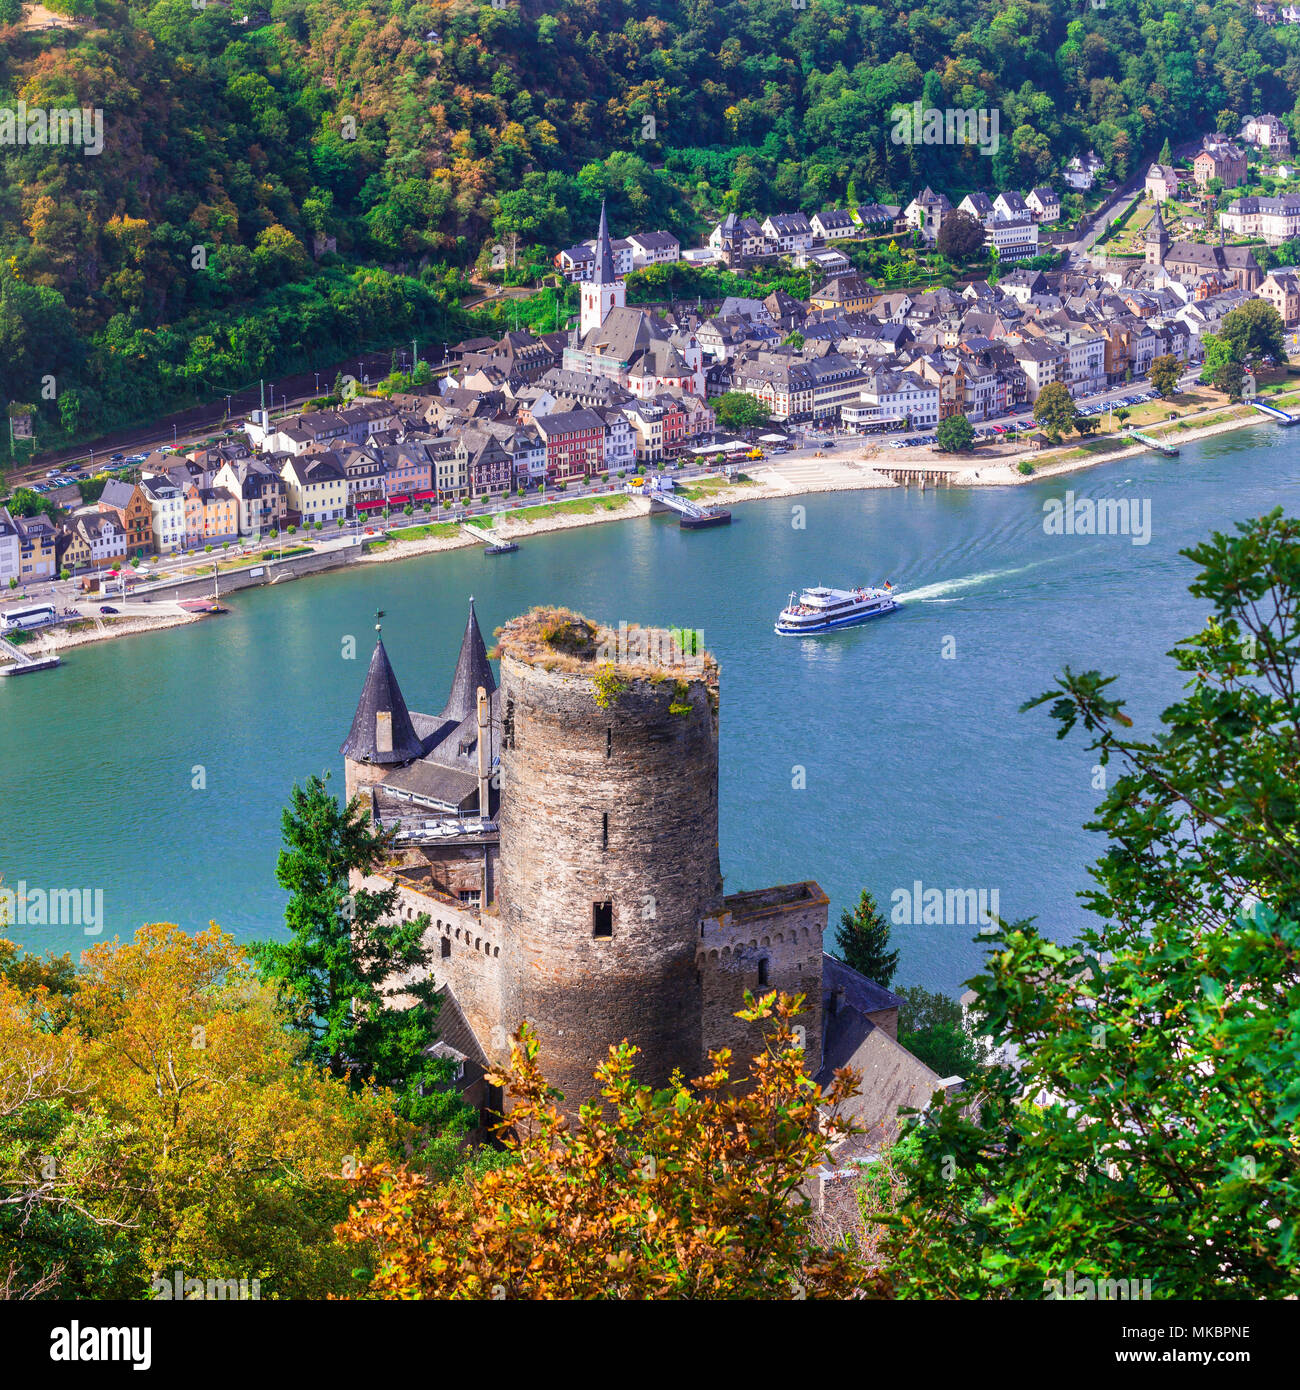 Impresionante castillo kats sobre el río Rin, Alemania. Foto de stock